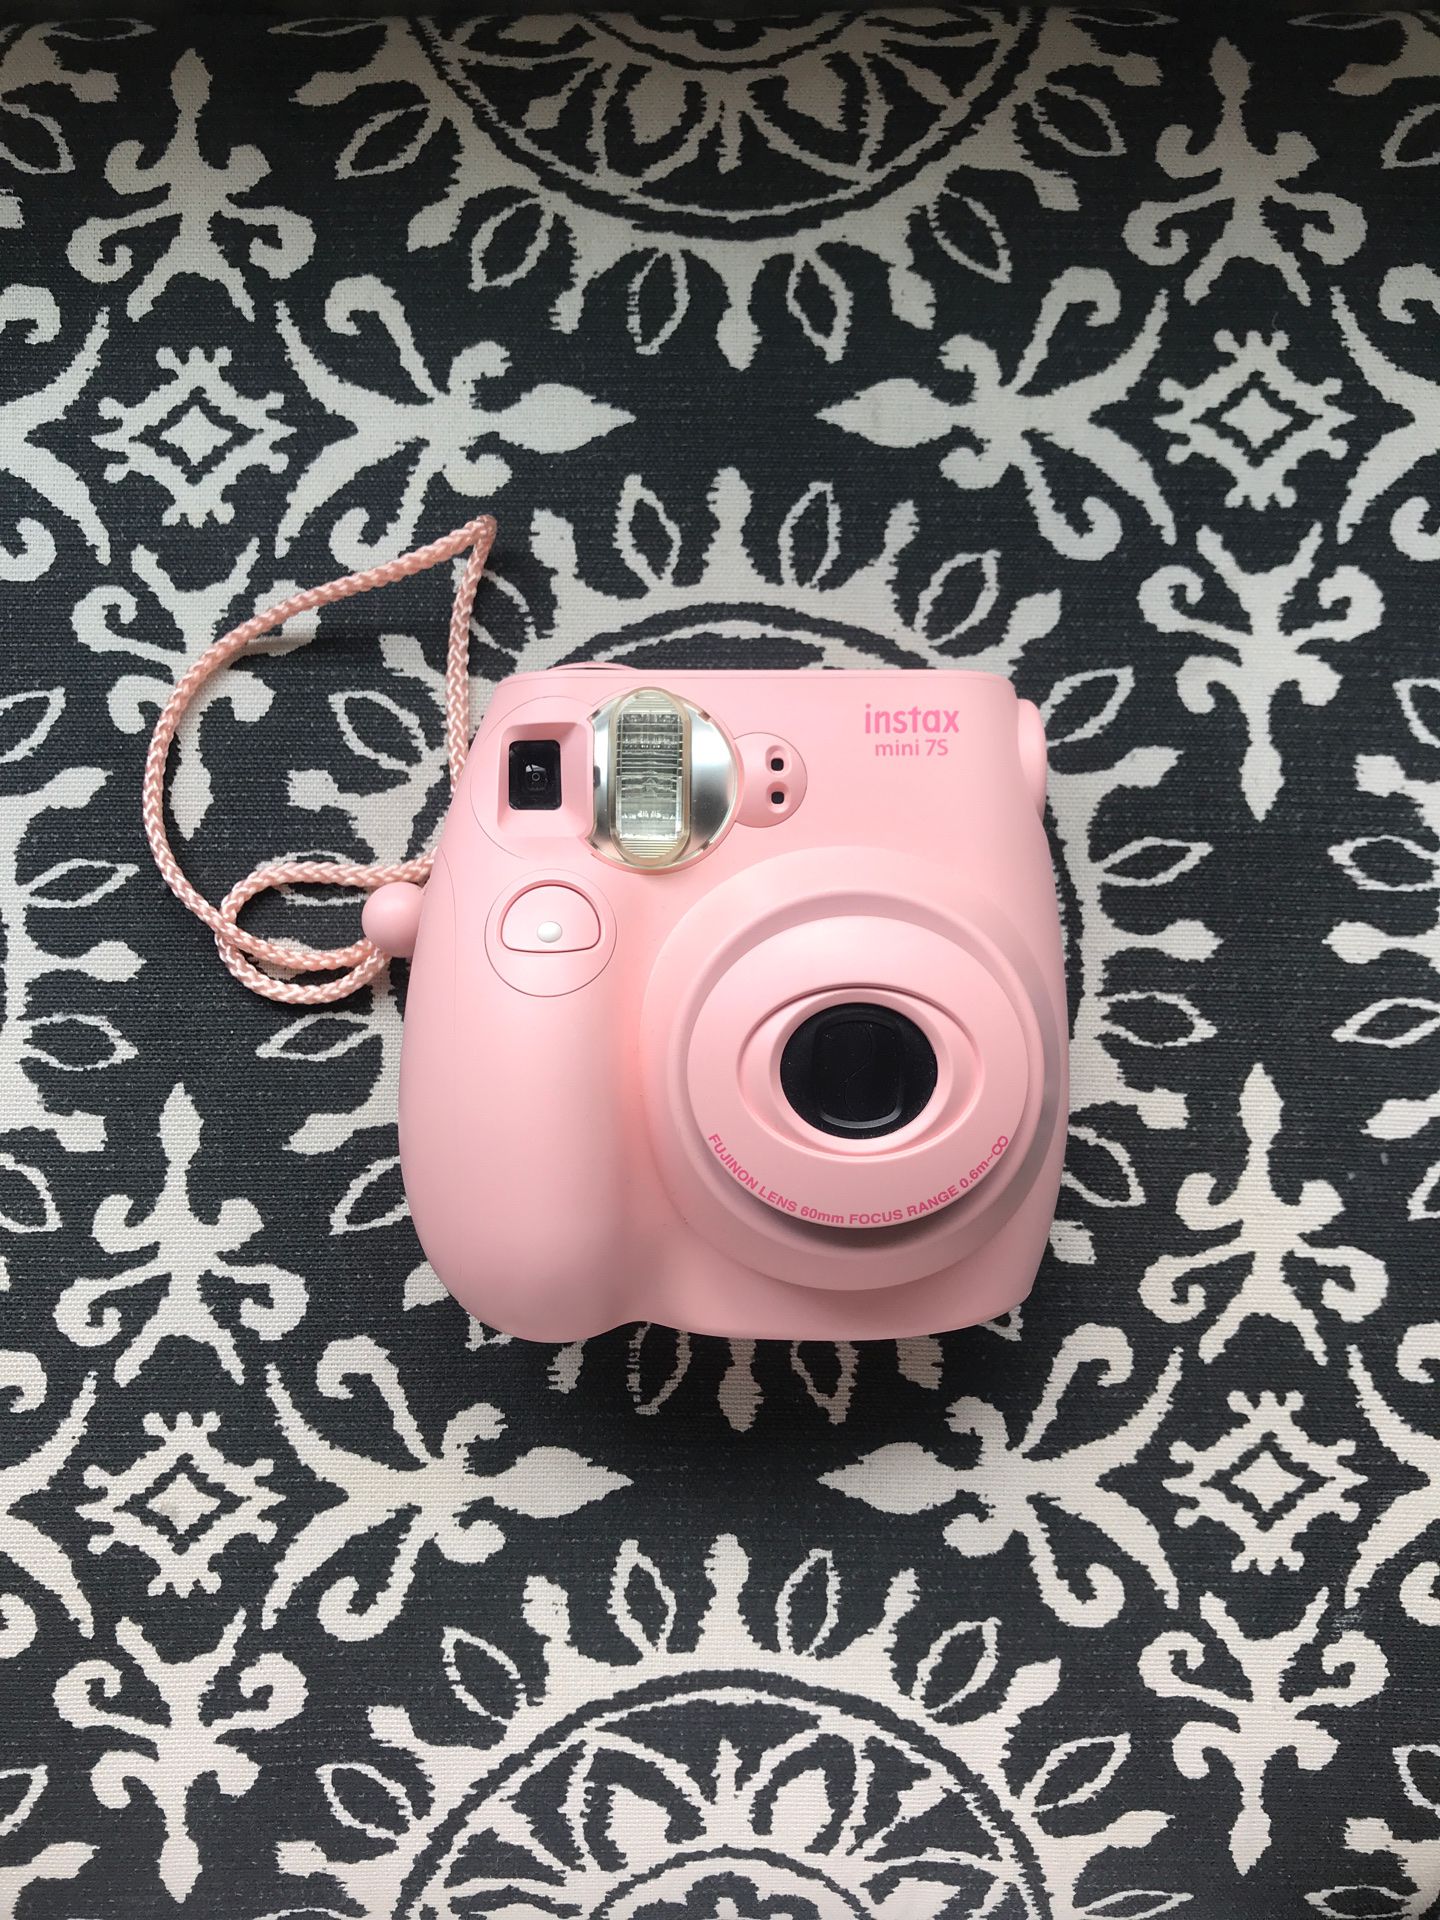 FujiFilm instax mini 7S pink Polaroid camera